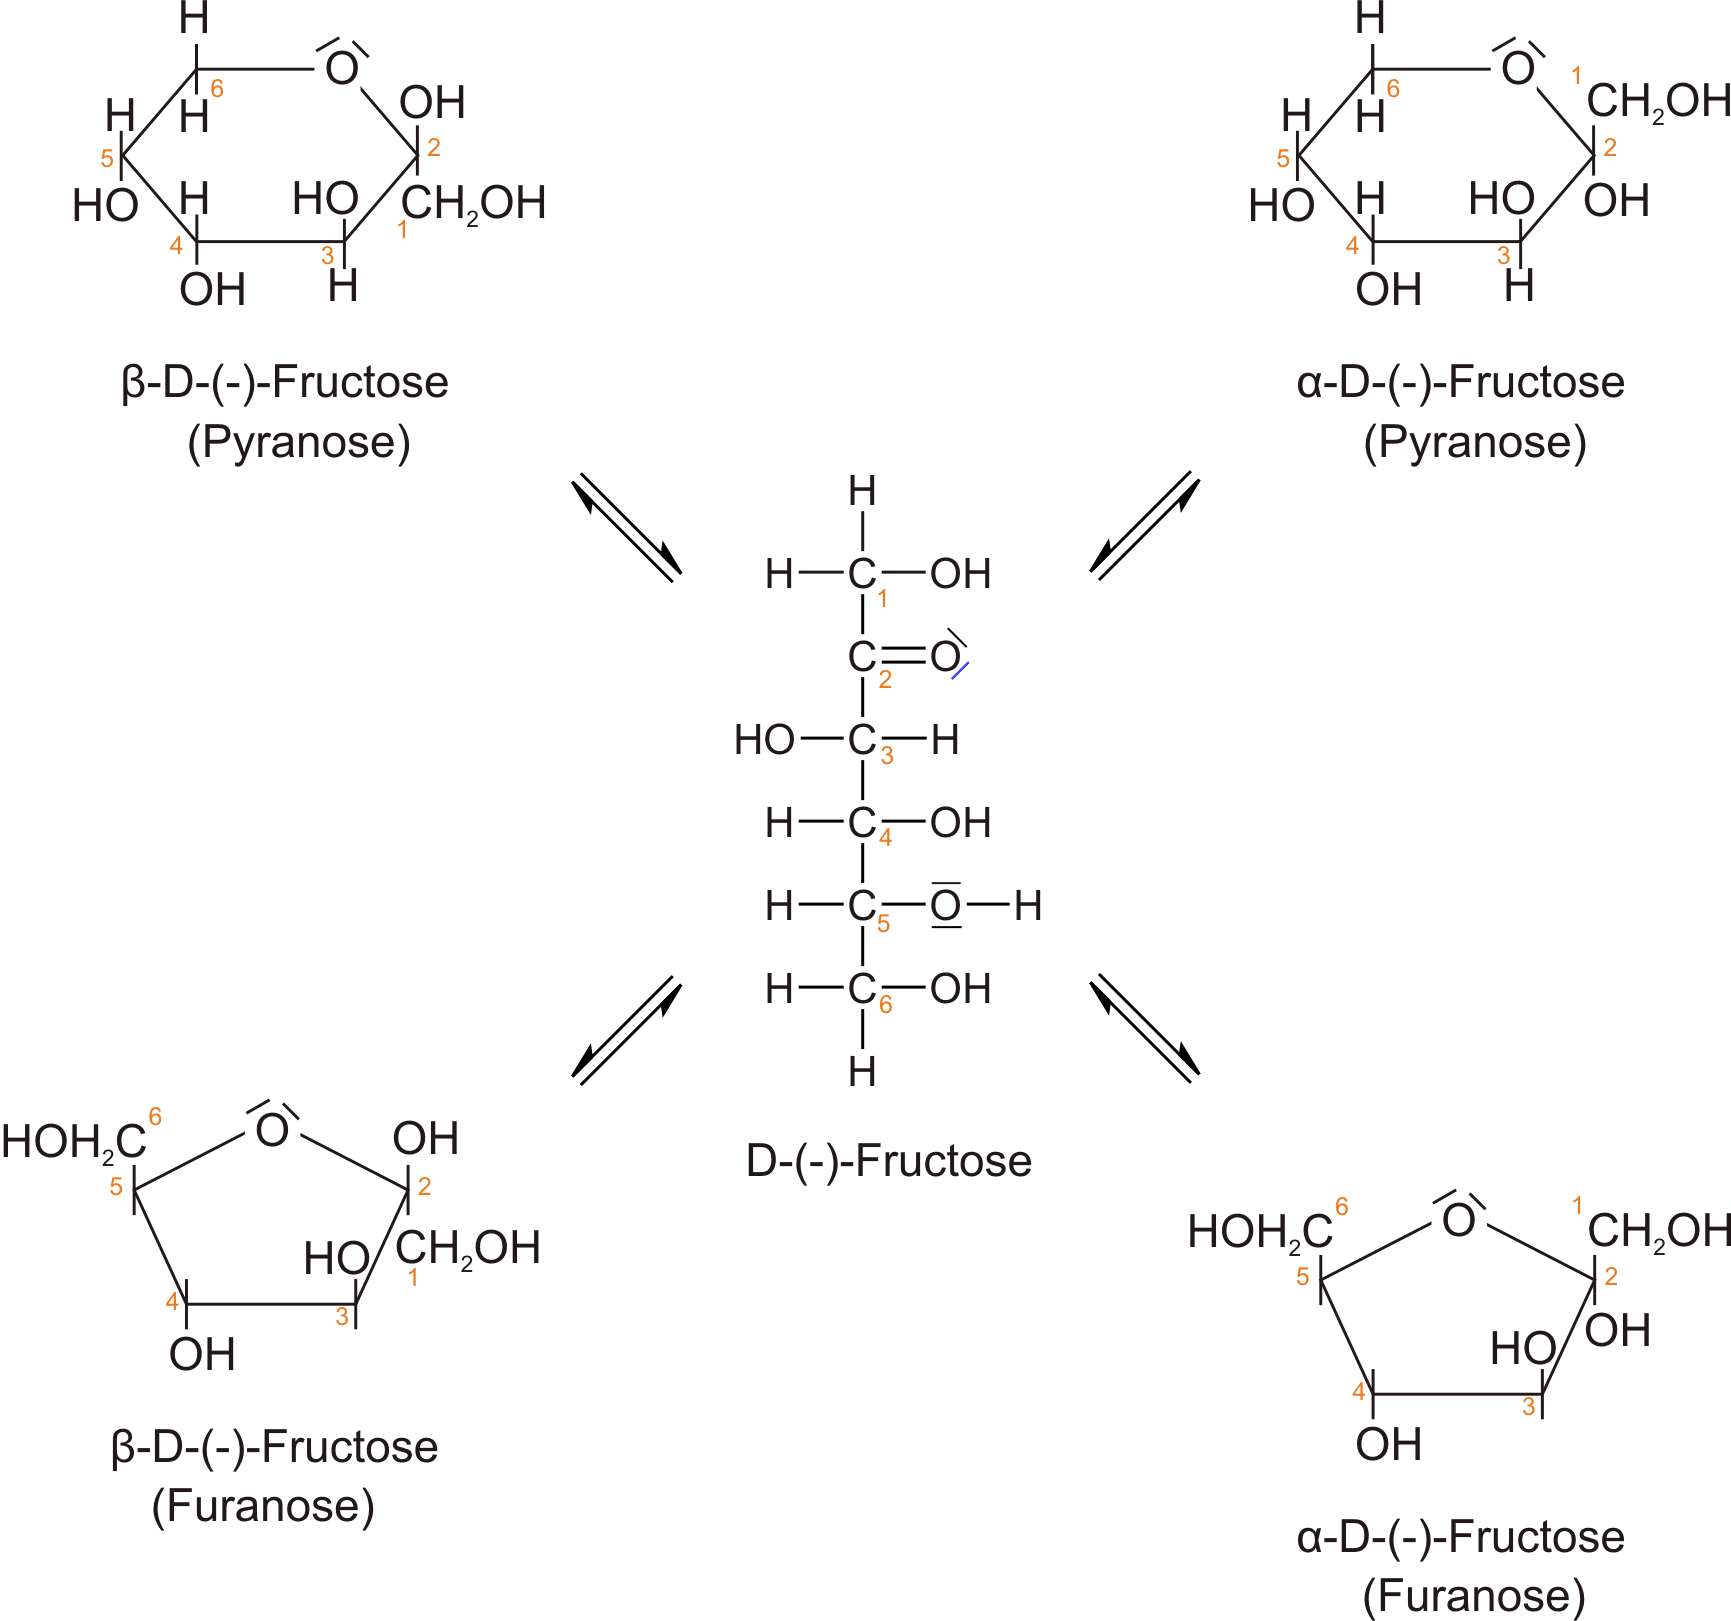 Alle anomere Fructose-Moleküle in Fischer- und Haworth-Projektion